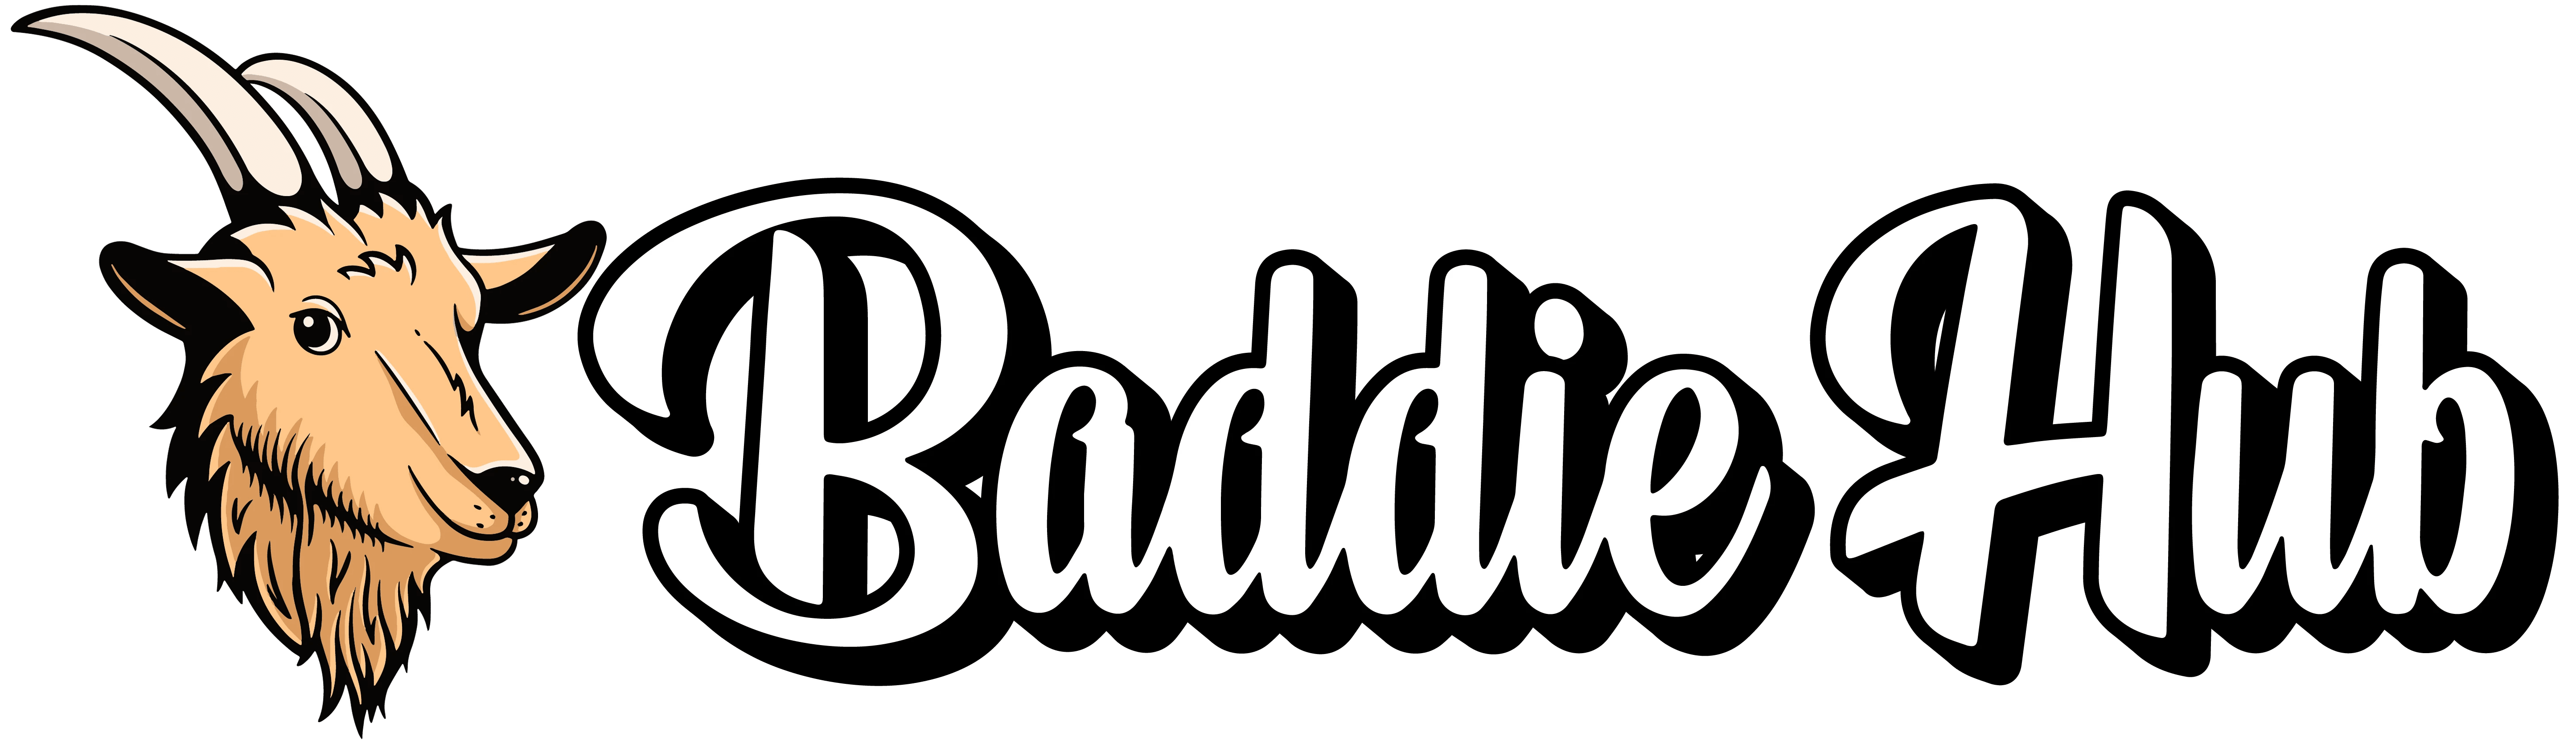 baddieshub.eu